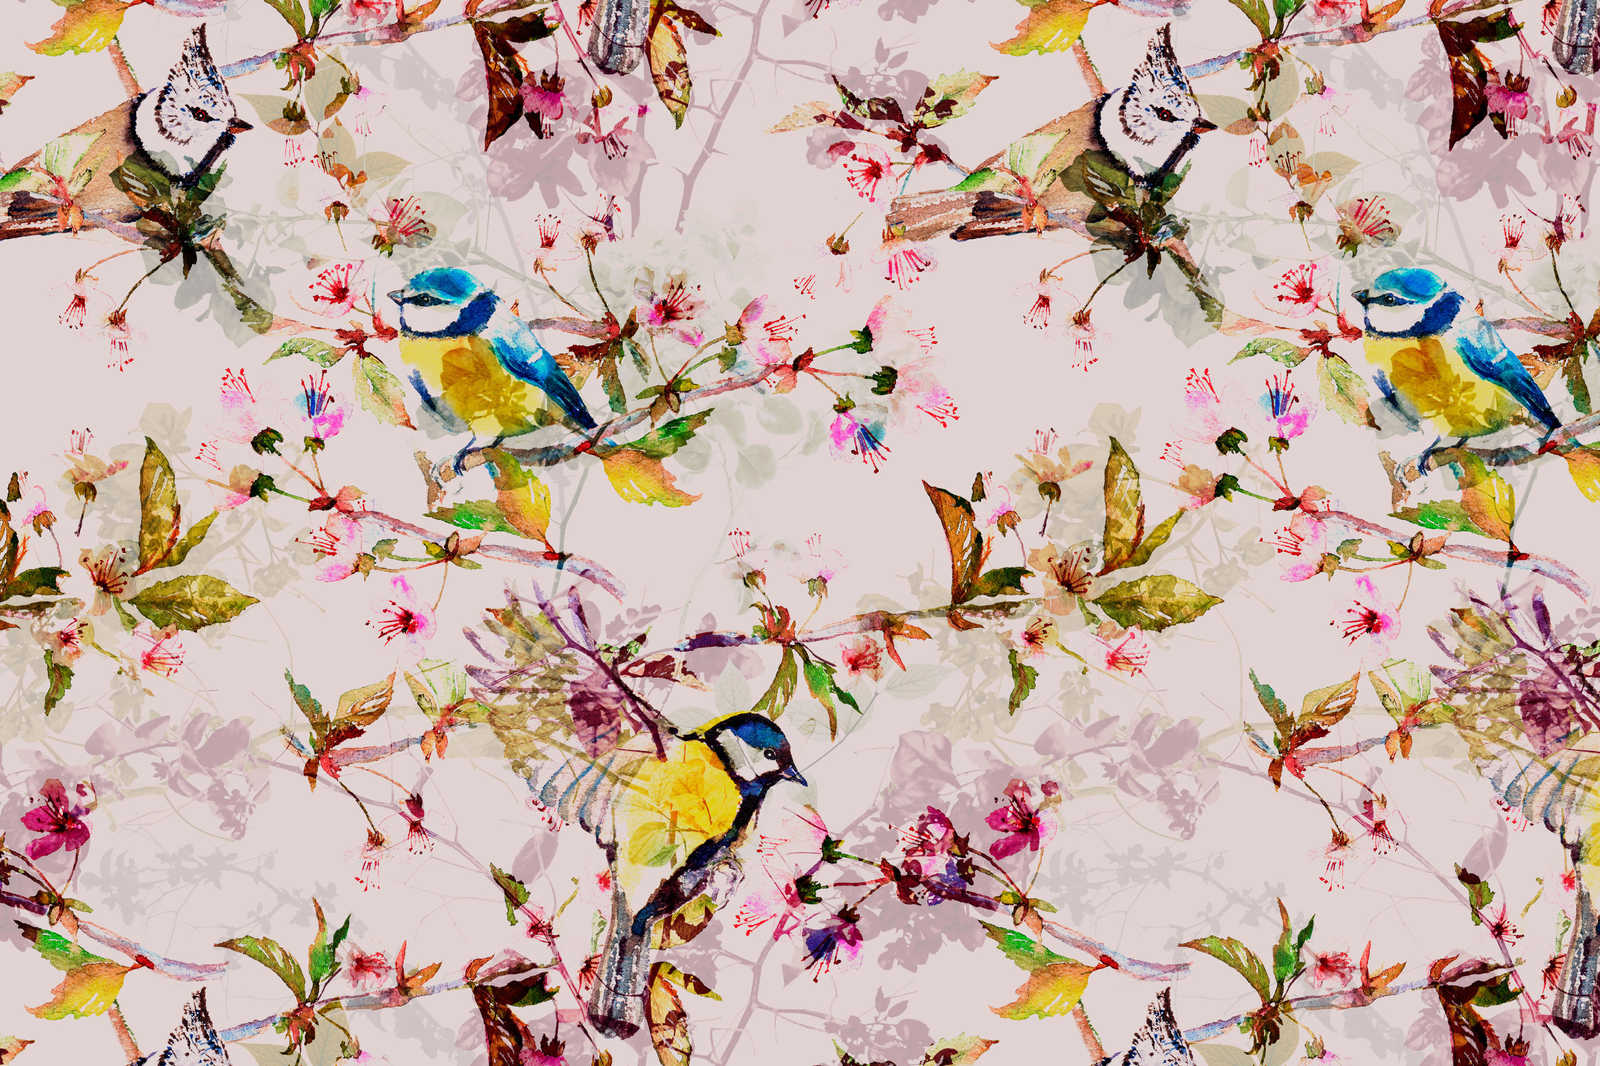             Oiseaux toile style collage - 0,90 m x 0,60 m
        